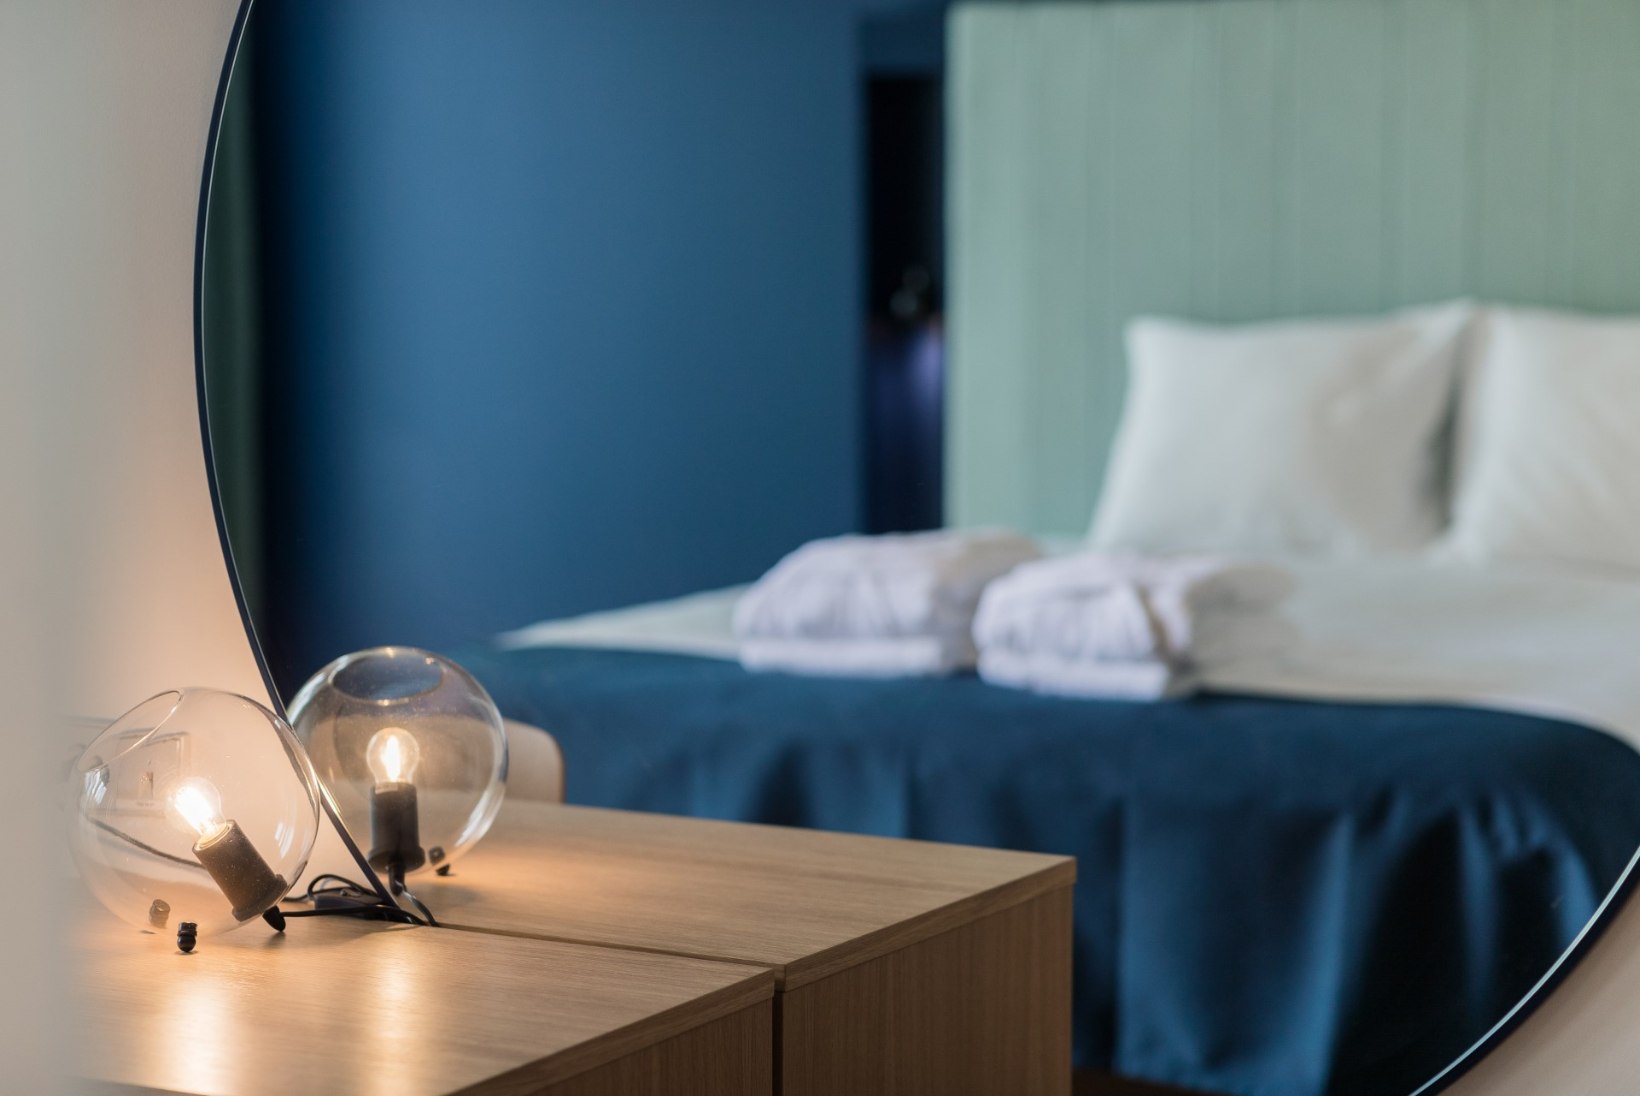 GALERII | Pärnu saab koos suvepealinna tiitliga juurde spaahotelli koos 150 voodikohaga